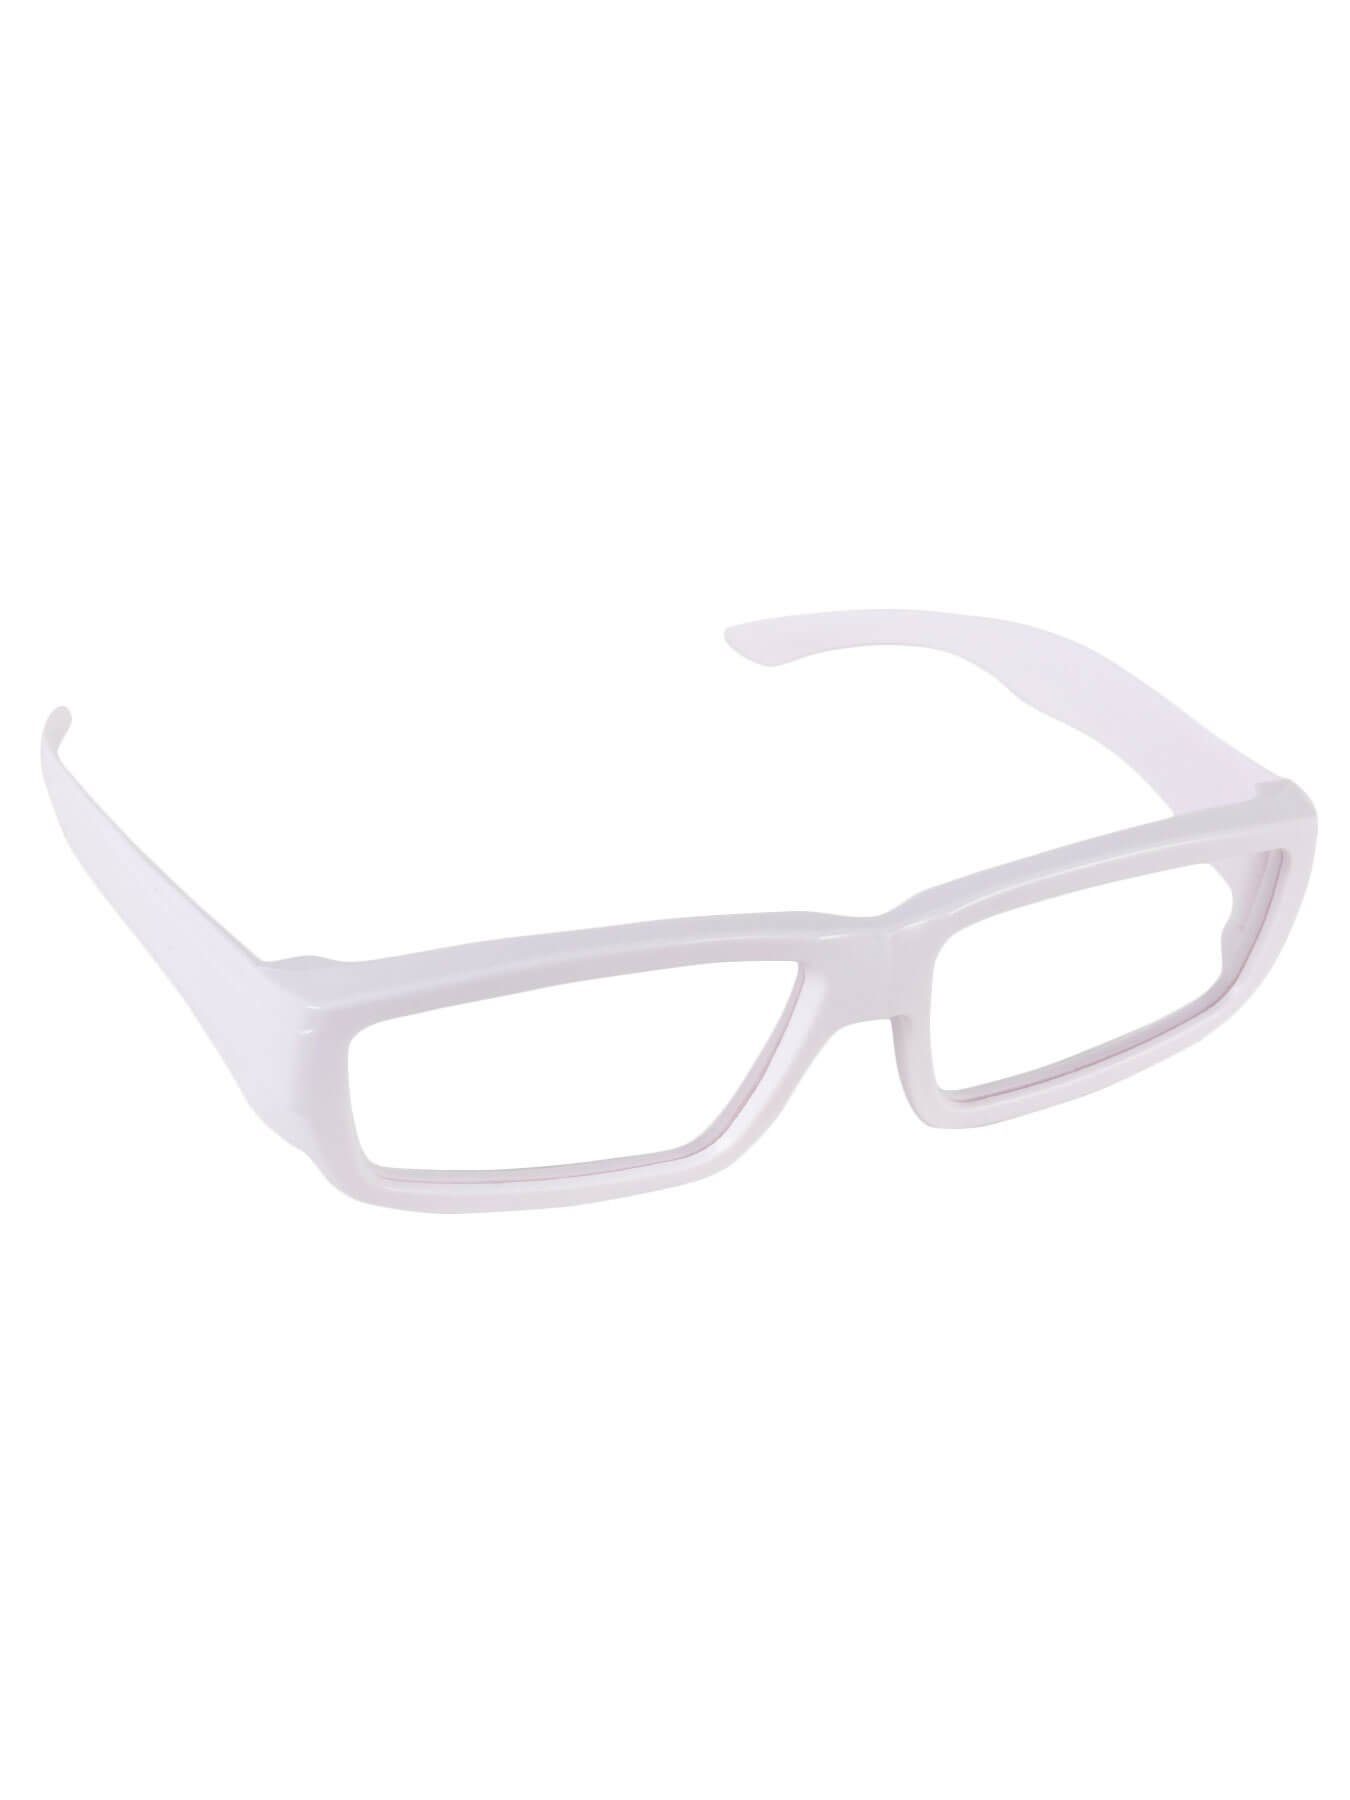 PSYWORK 3D-Brille Schwarzlicht 3D-Brille ChromaDepth Eckig Weiß